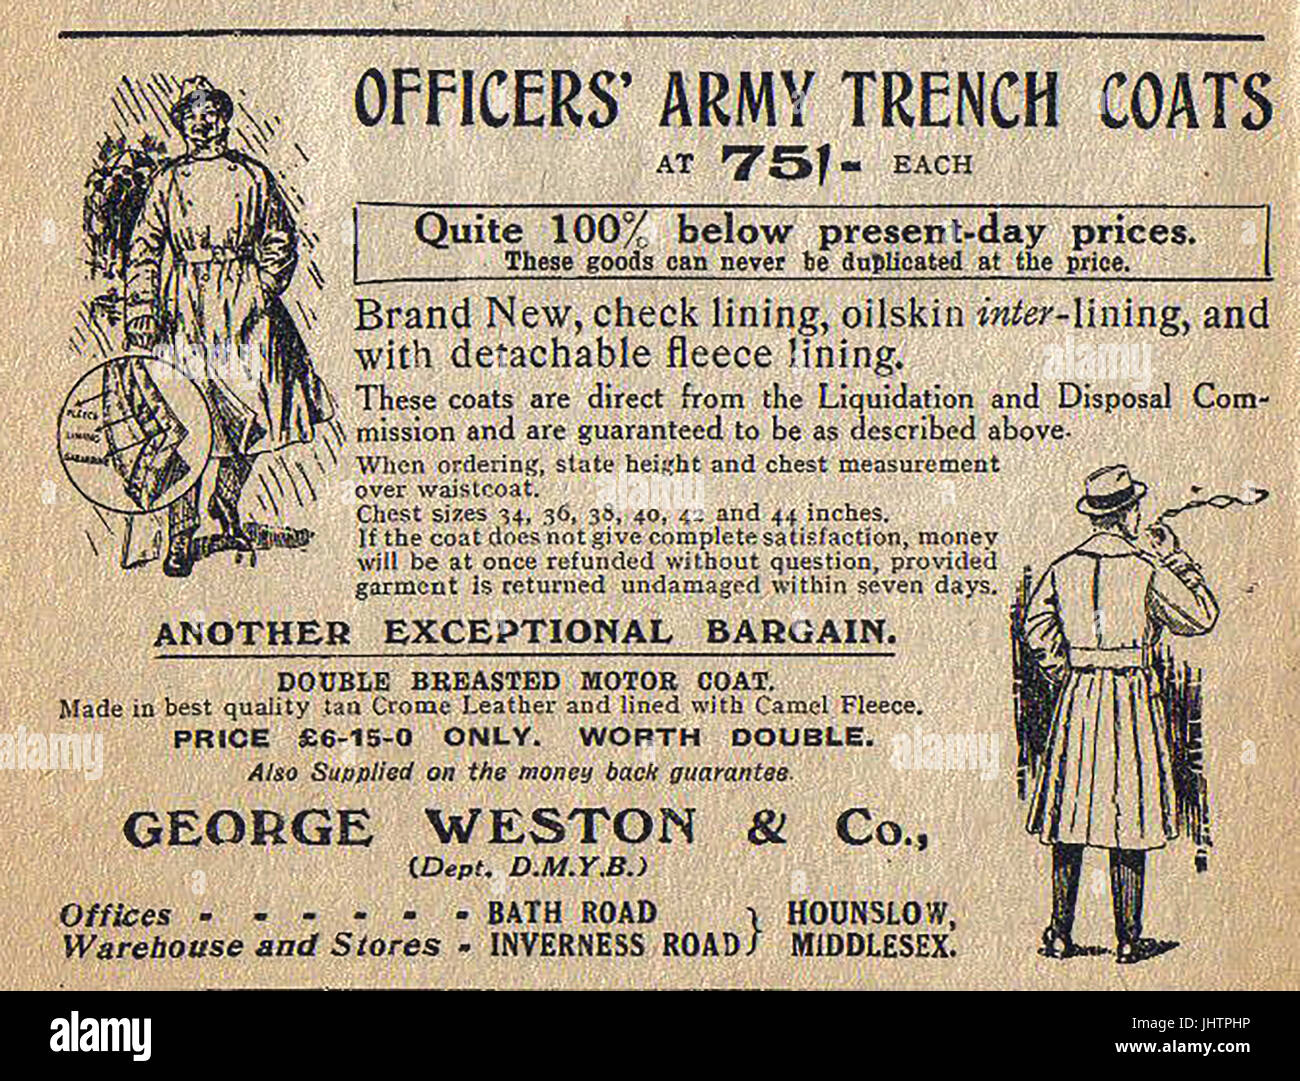 Impermeable oficiales post-guerra anuncio Foto de stock